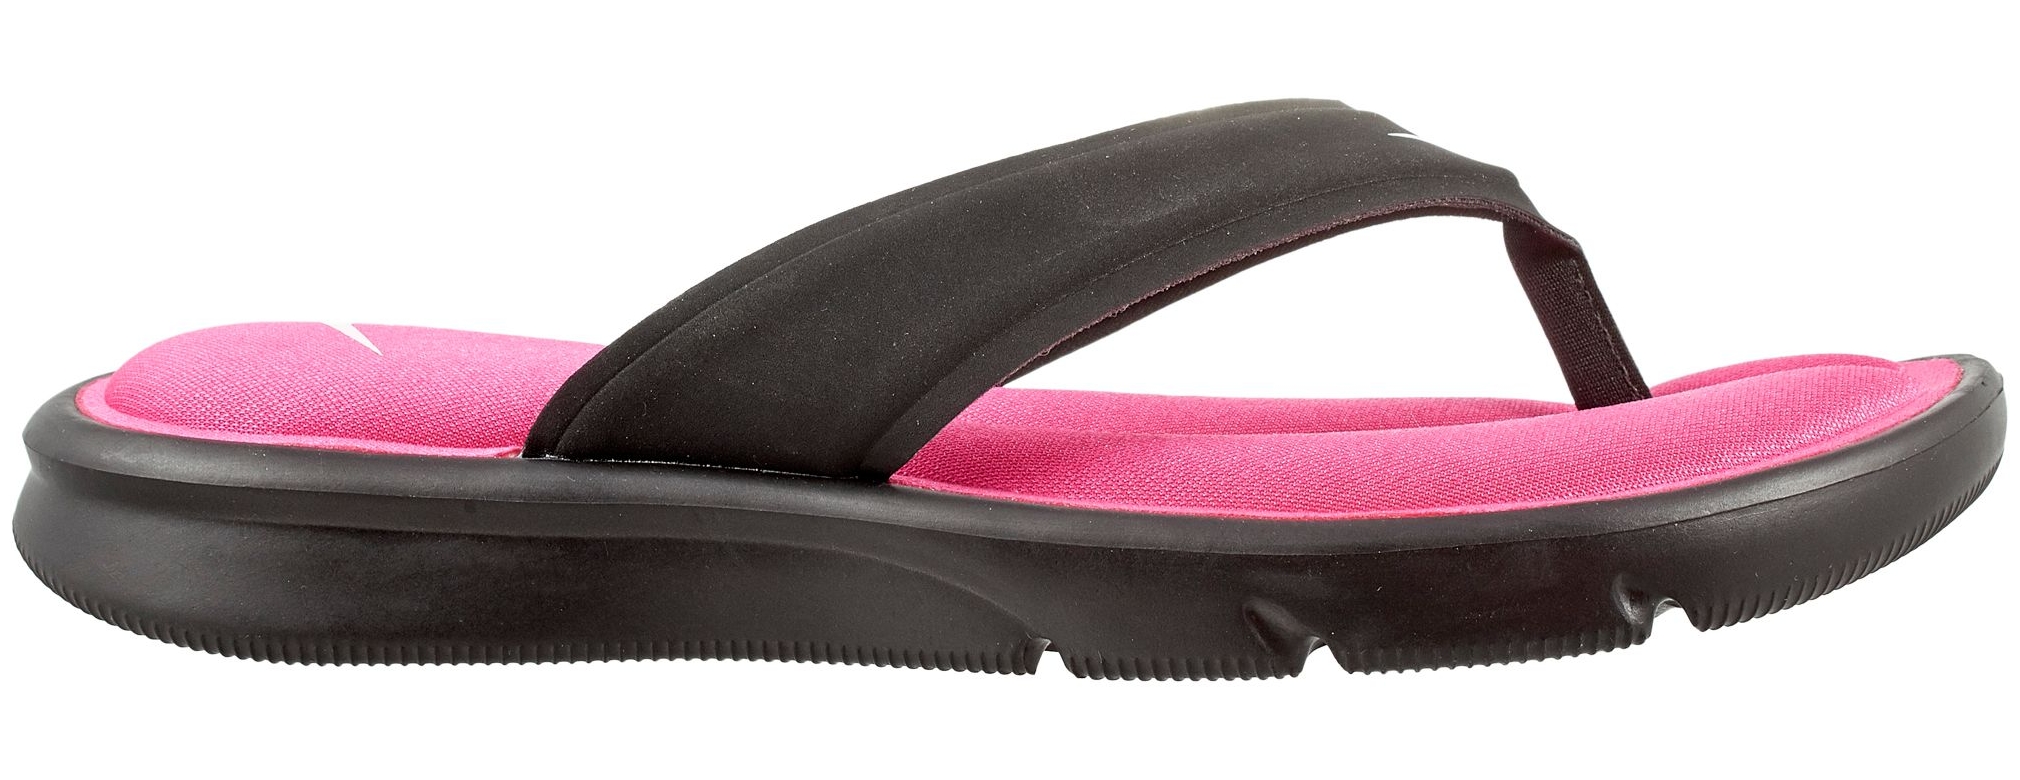 Nike - Nike Women's Ultra Comfort Thong Flip Flops (Black/Pink, 5 ...